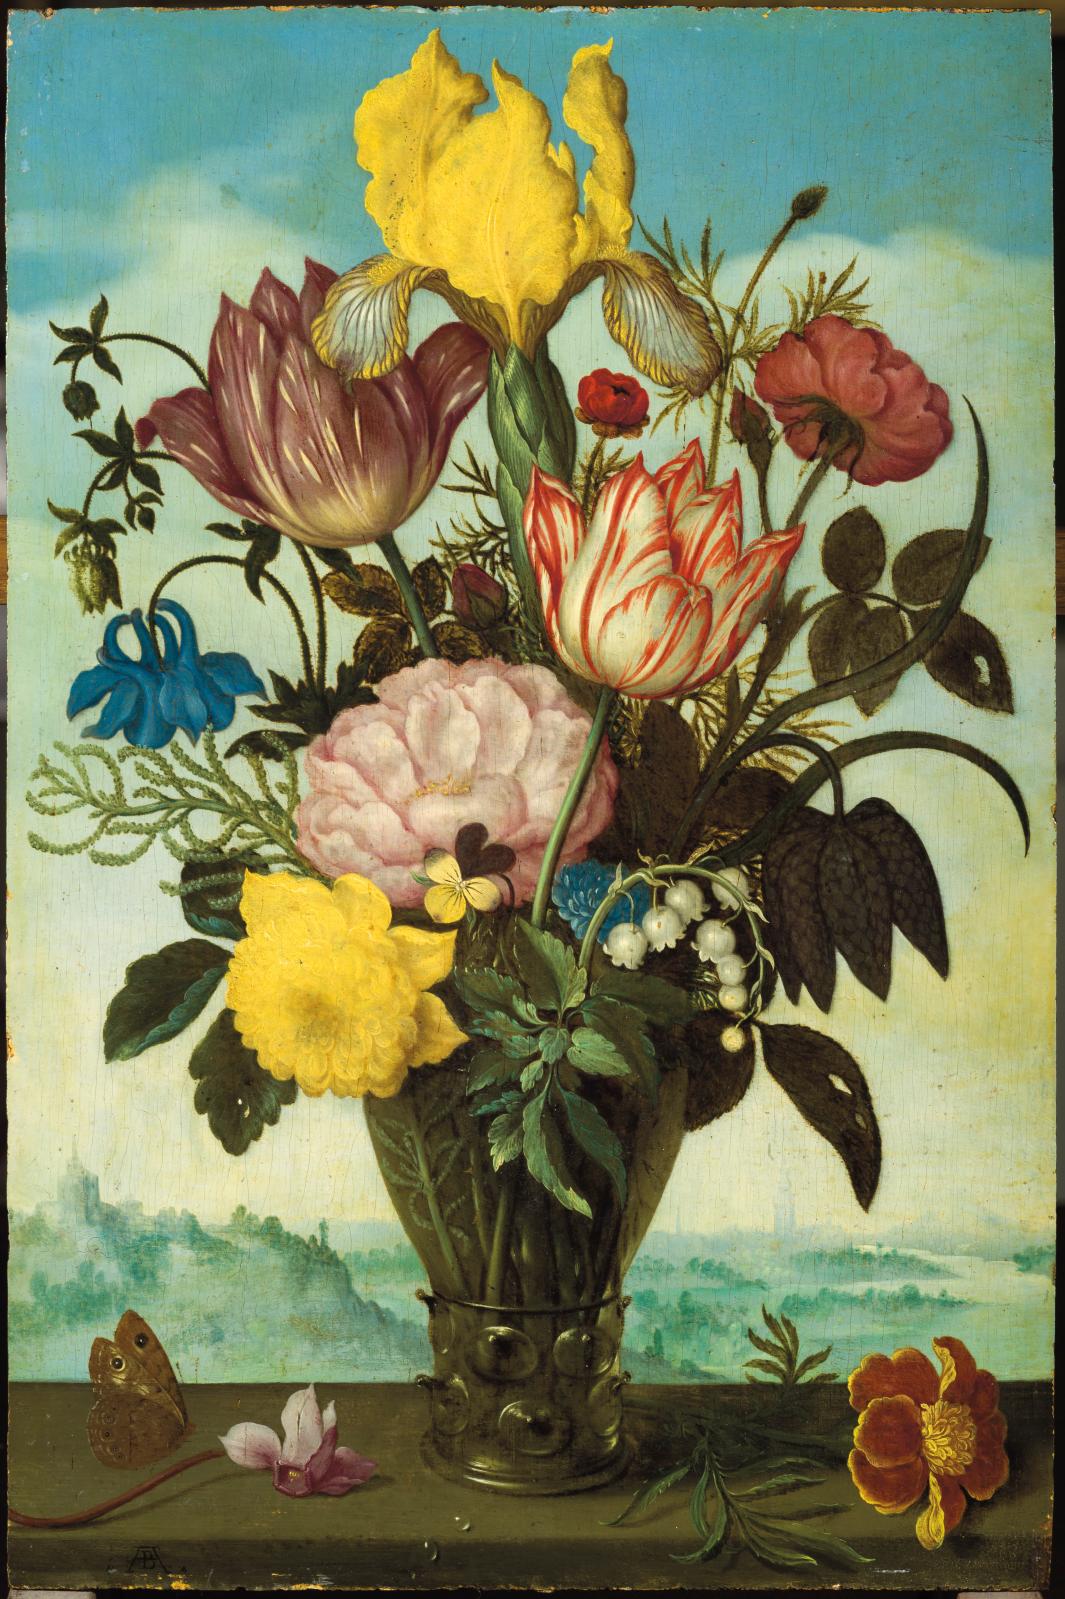 Bosschaert the Elder's Flowers Garner €3,307,800